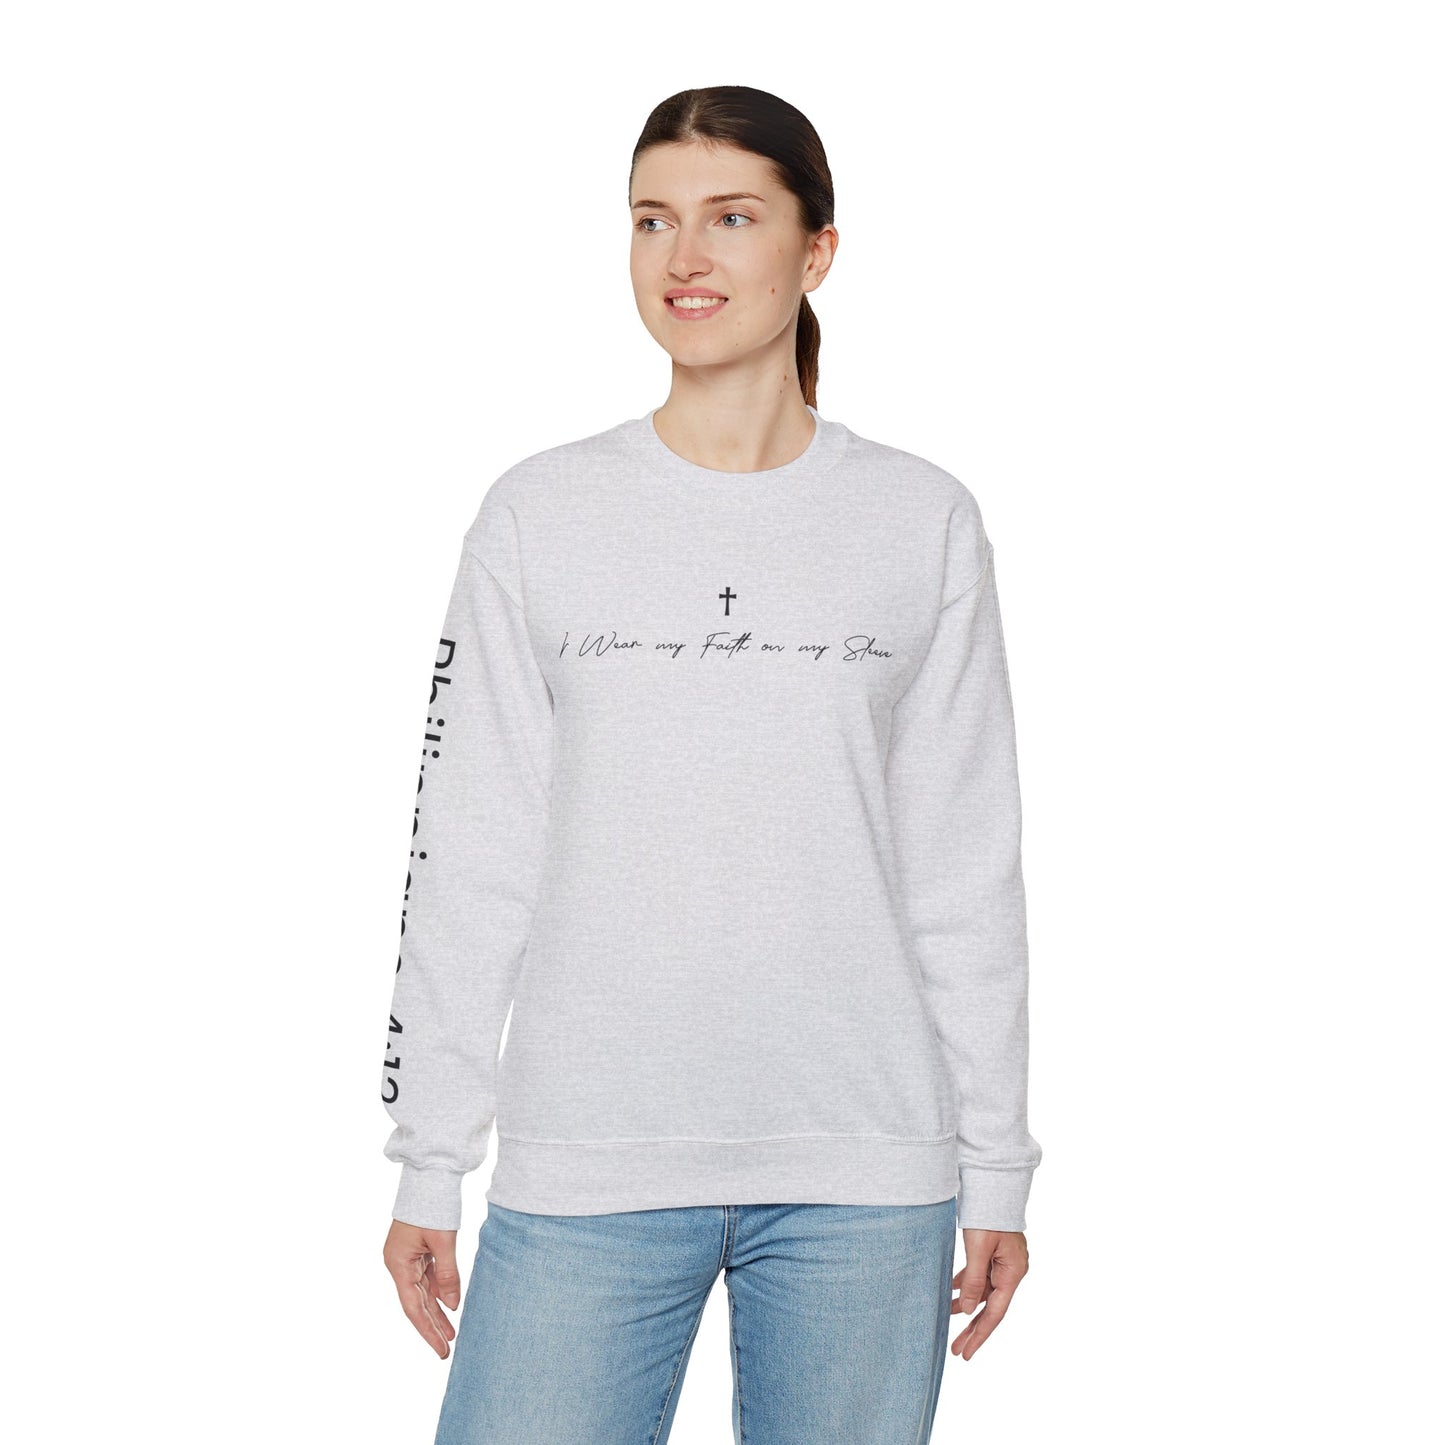 Christian Woman's Sweatshirt -  "I Wear My Faith On My Sleeve"